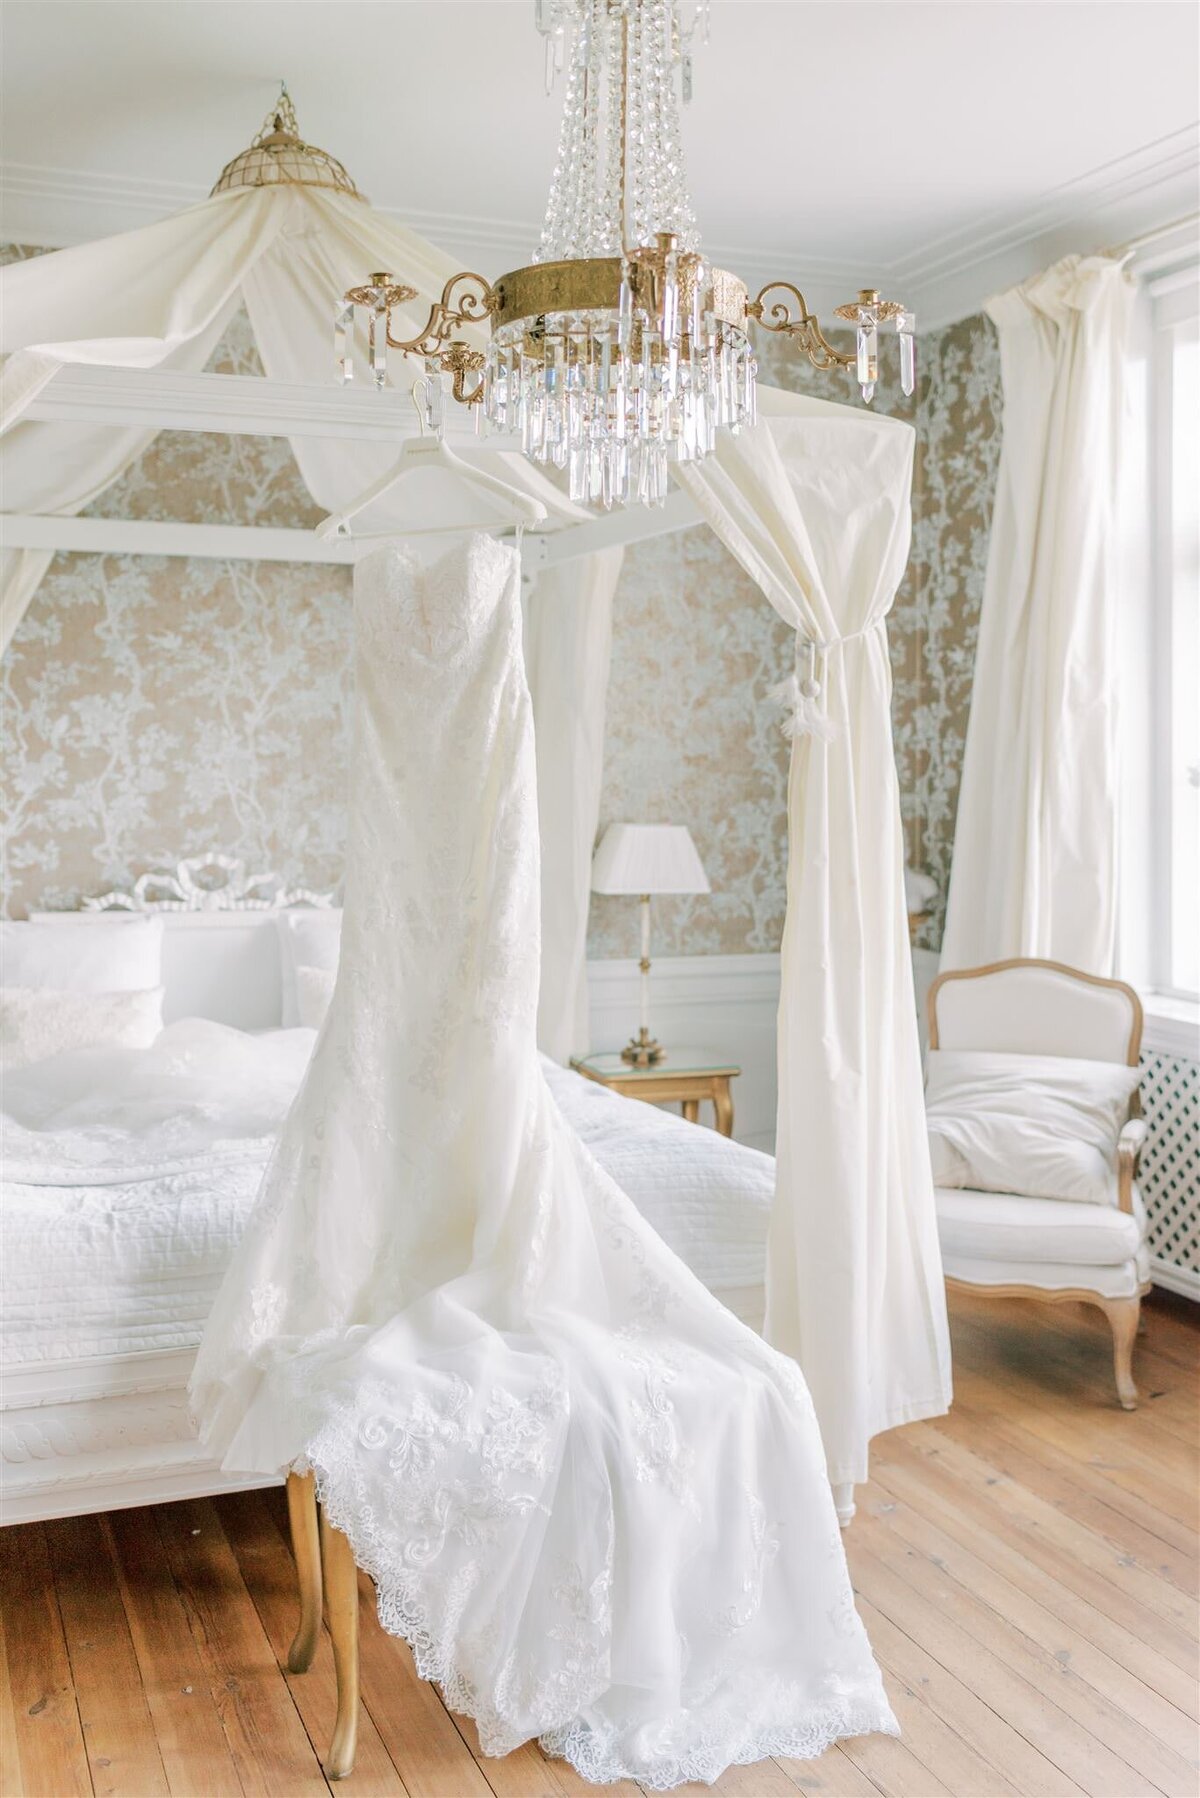 Destination Wedding Photographer Anna Lundgren - helloalora_Rånäs Slott chateau wedding in Sweden wedding suite